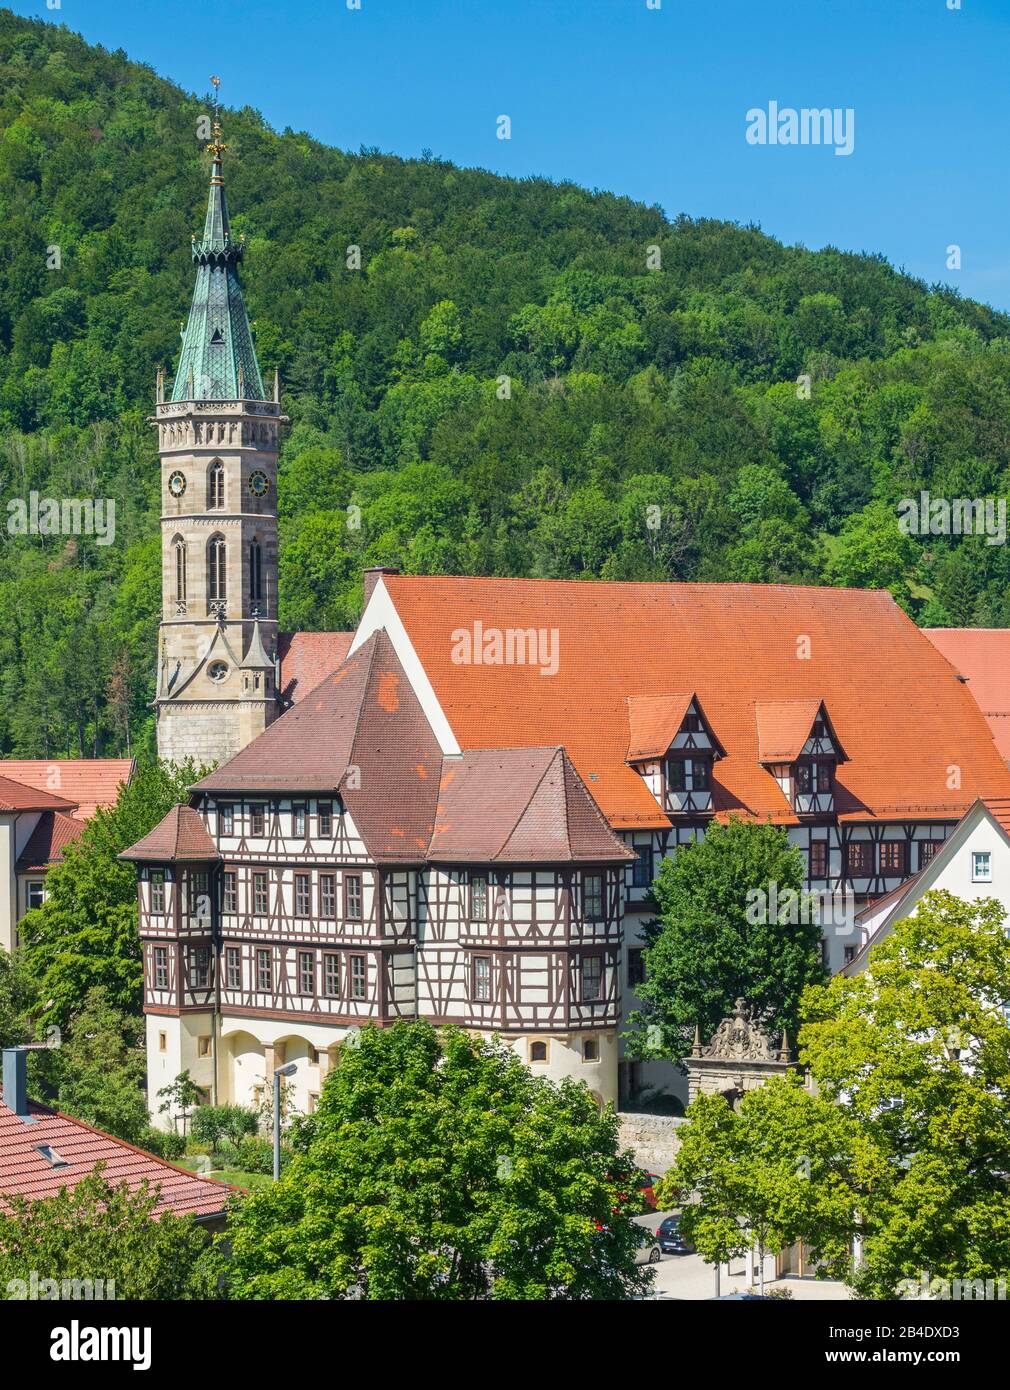 Germania, Baden-Württemberg, Bad Urach, Residenzschloss con mostre del Landesmuseum, edificio a graticcio su un alto pavimento in pietra, dietro la torre dell'Amanduskirche. Foto Stock